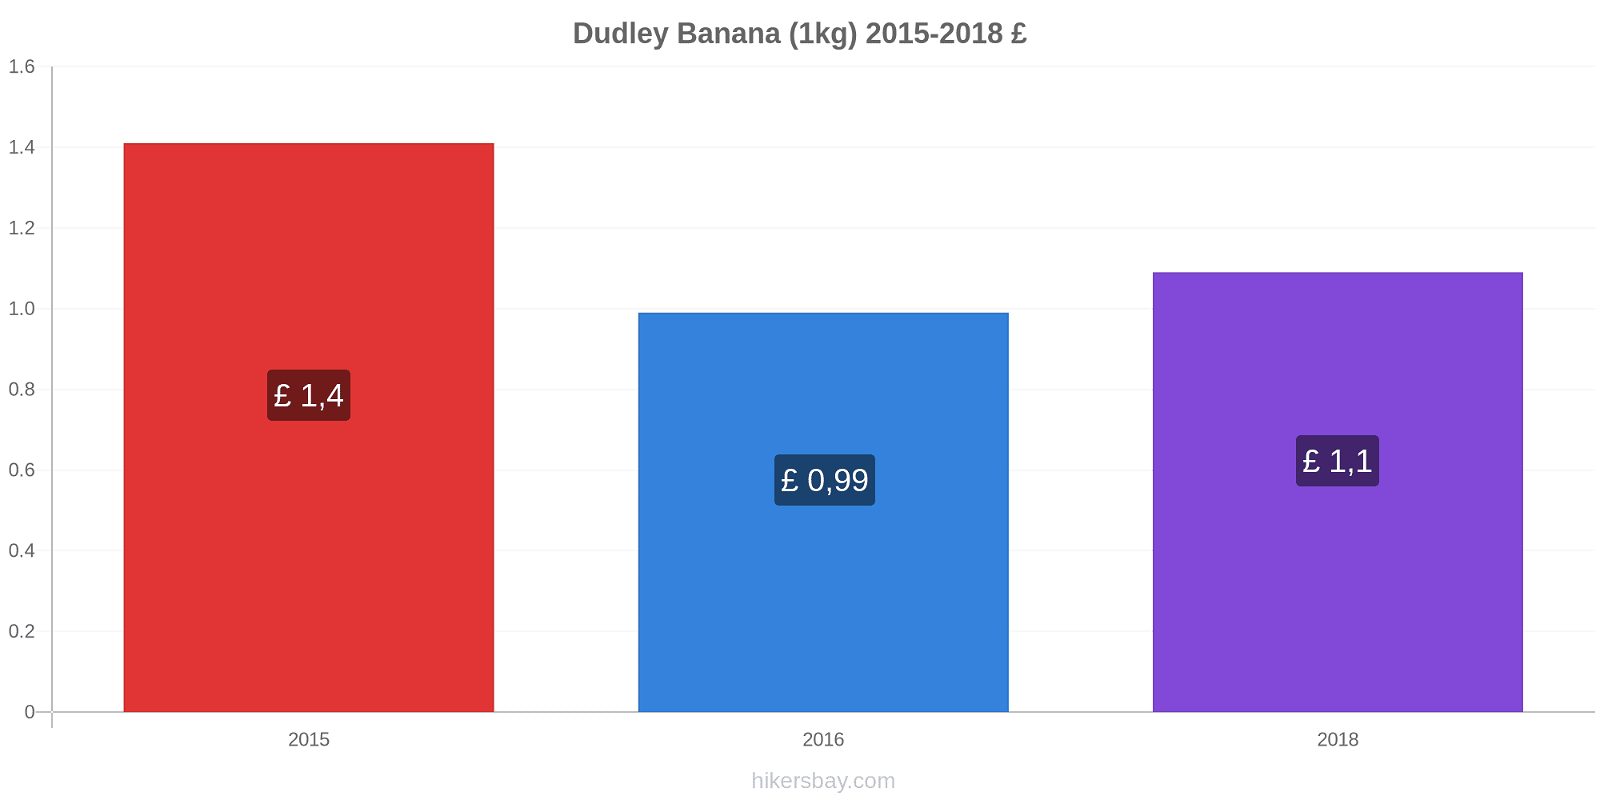 Dudley variação de preço Banana (1kg) hikersbay.com